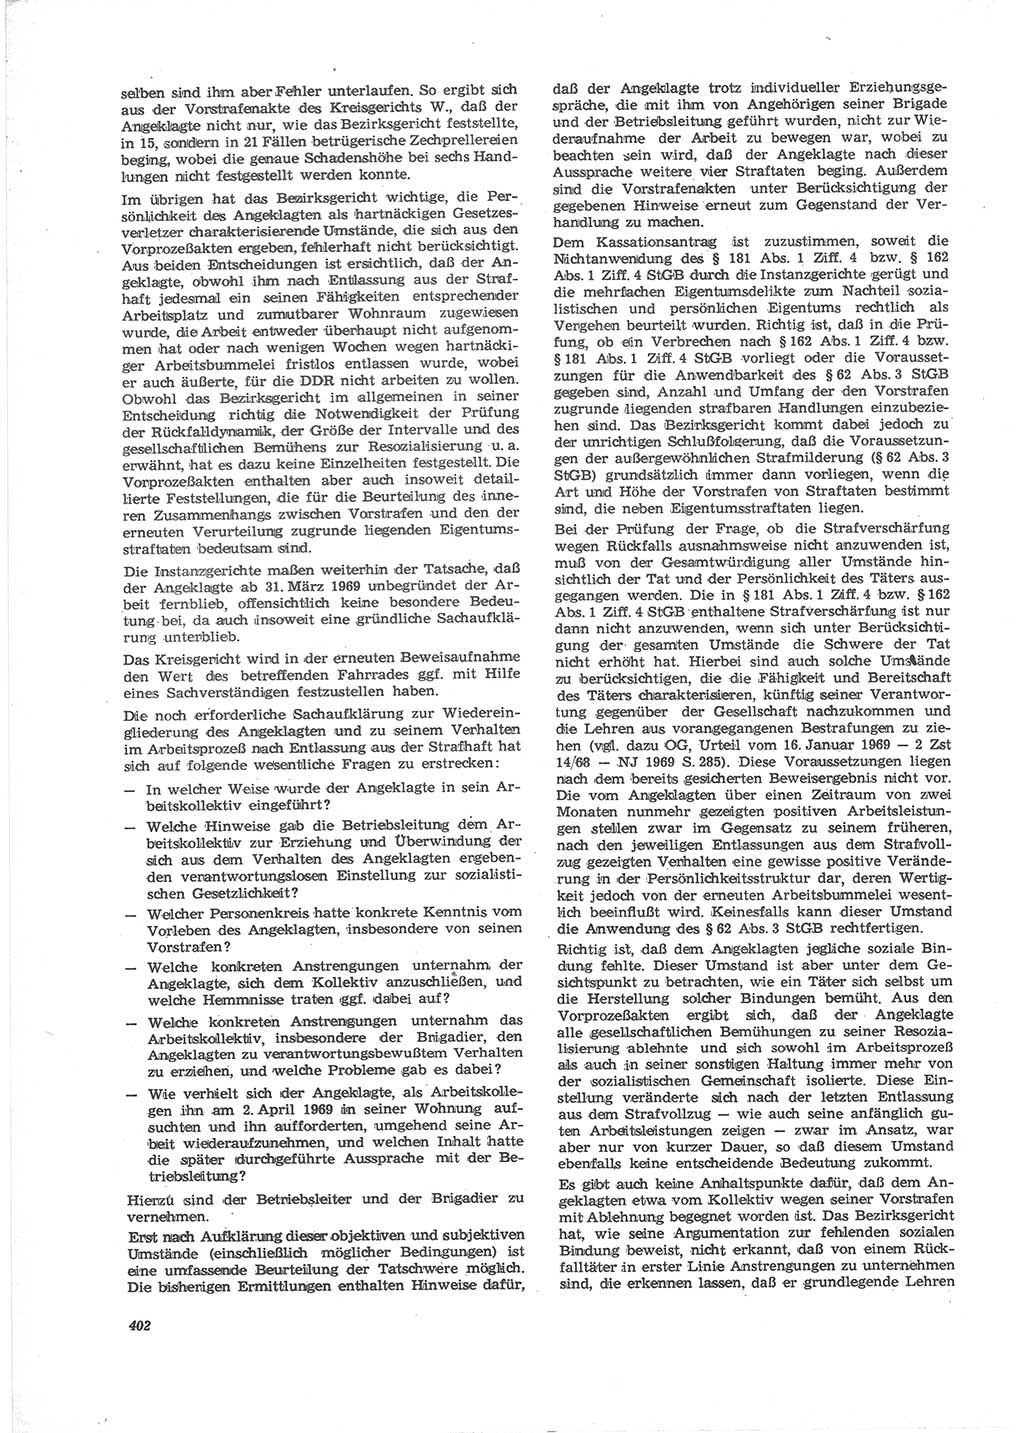 Neue Justiz (NJ), Zeitschrift für Recht und Rechtswissenschaft [Deutsche Demokratische Republik (DDR)], 24. Jahrgang 1970, Seite 402 (NJ DDR 1970, S. 402)